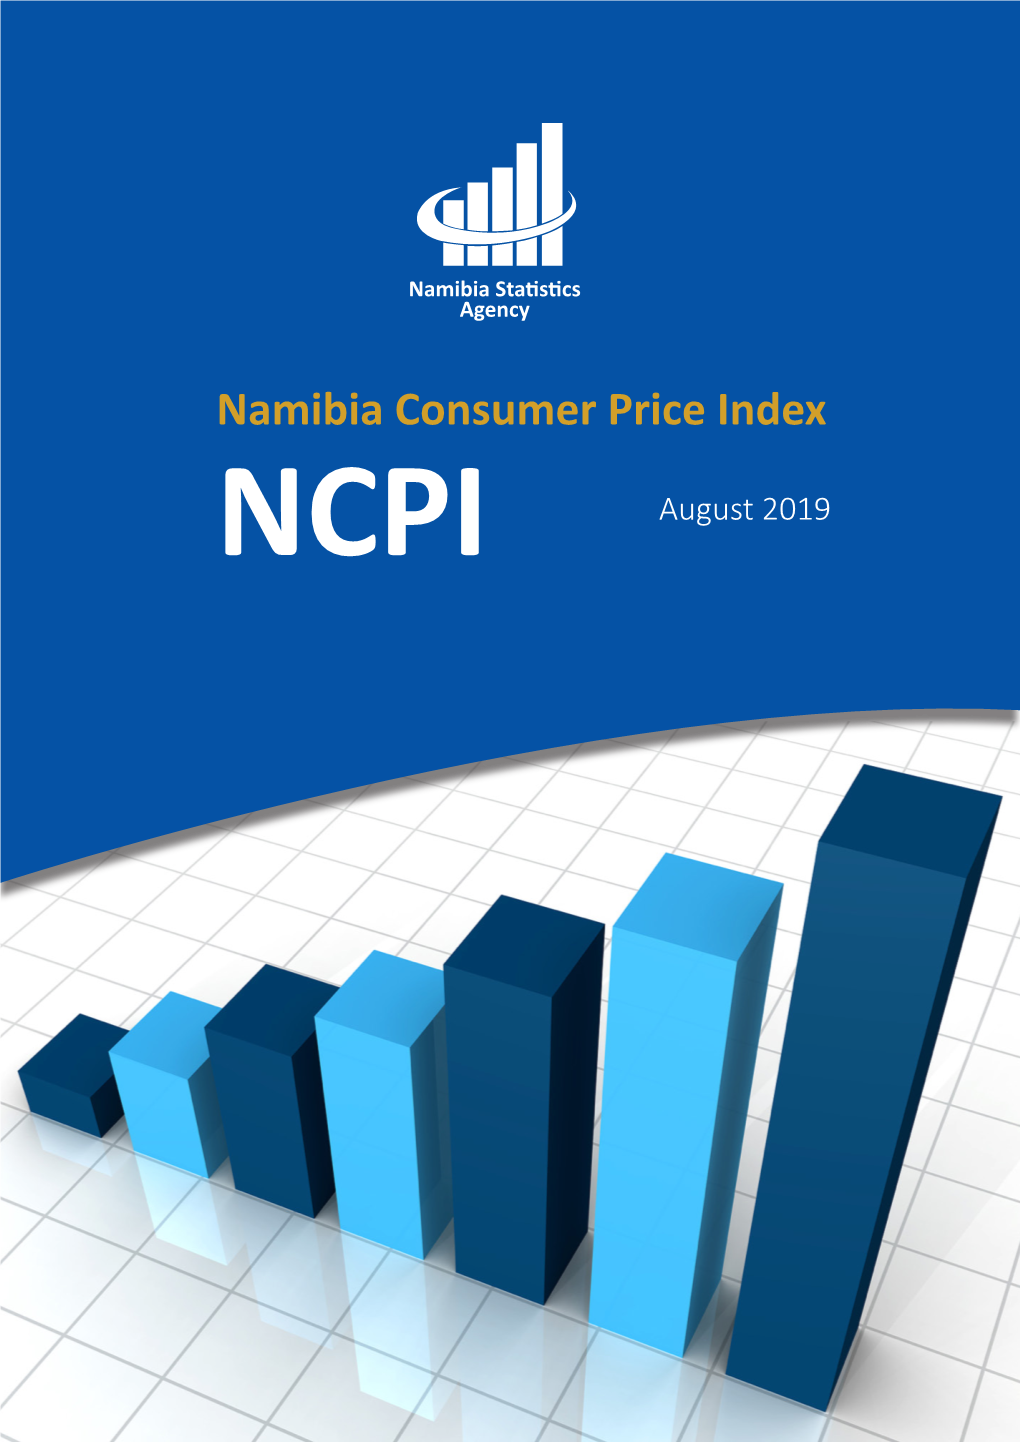 Namibia Consumer Price Index